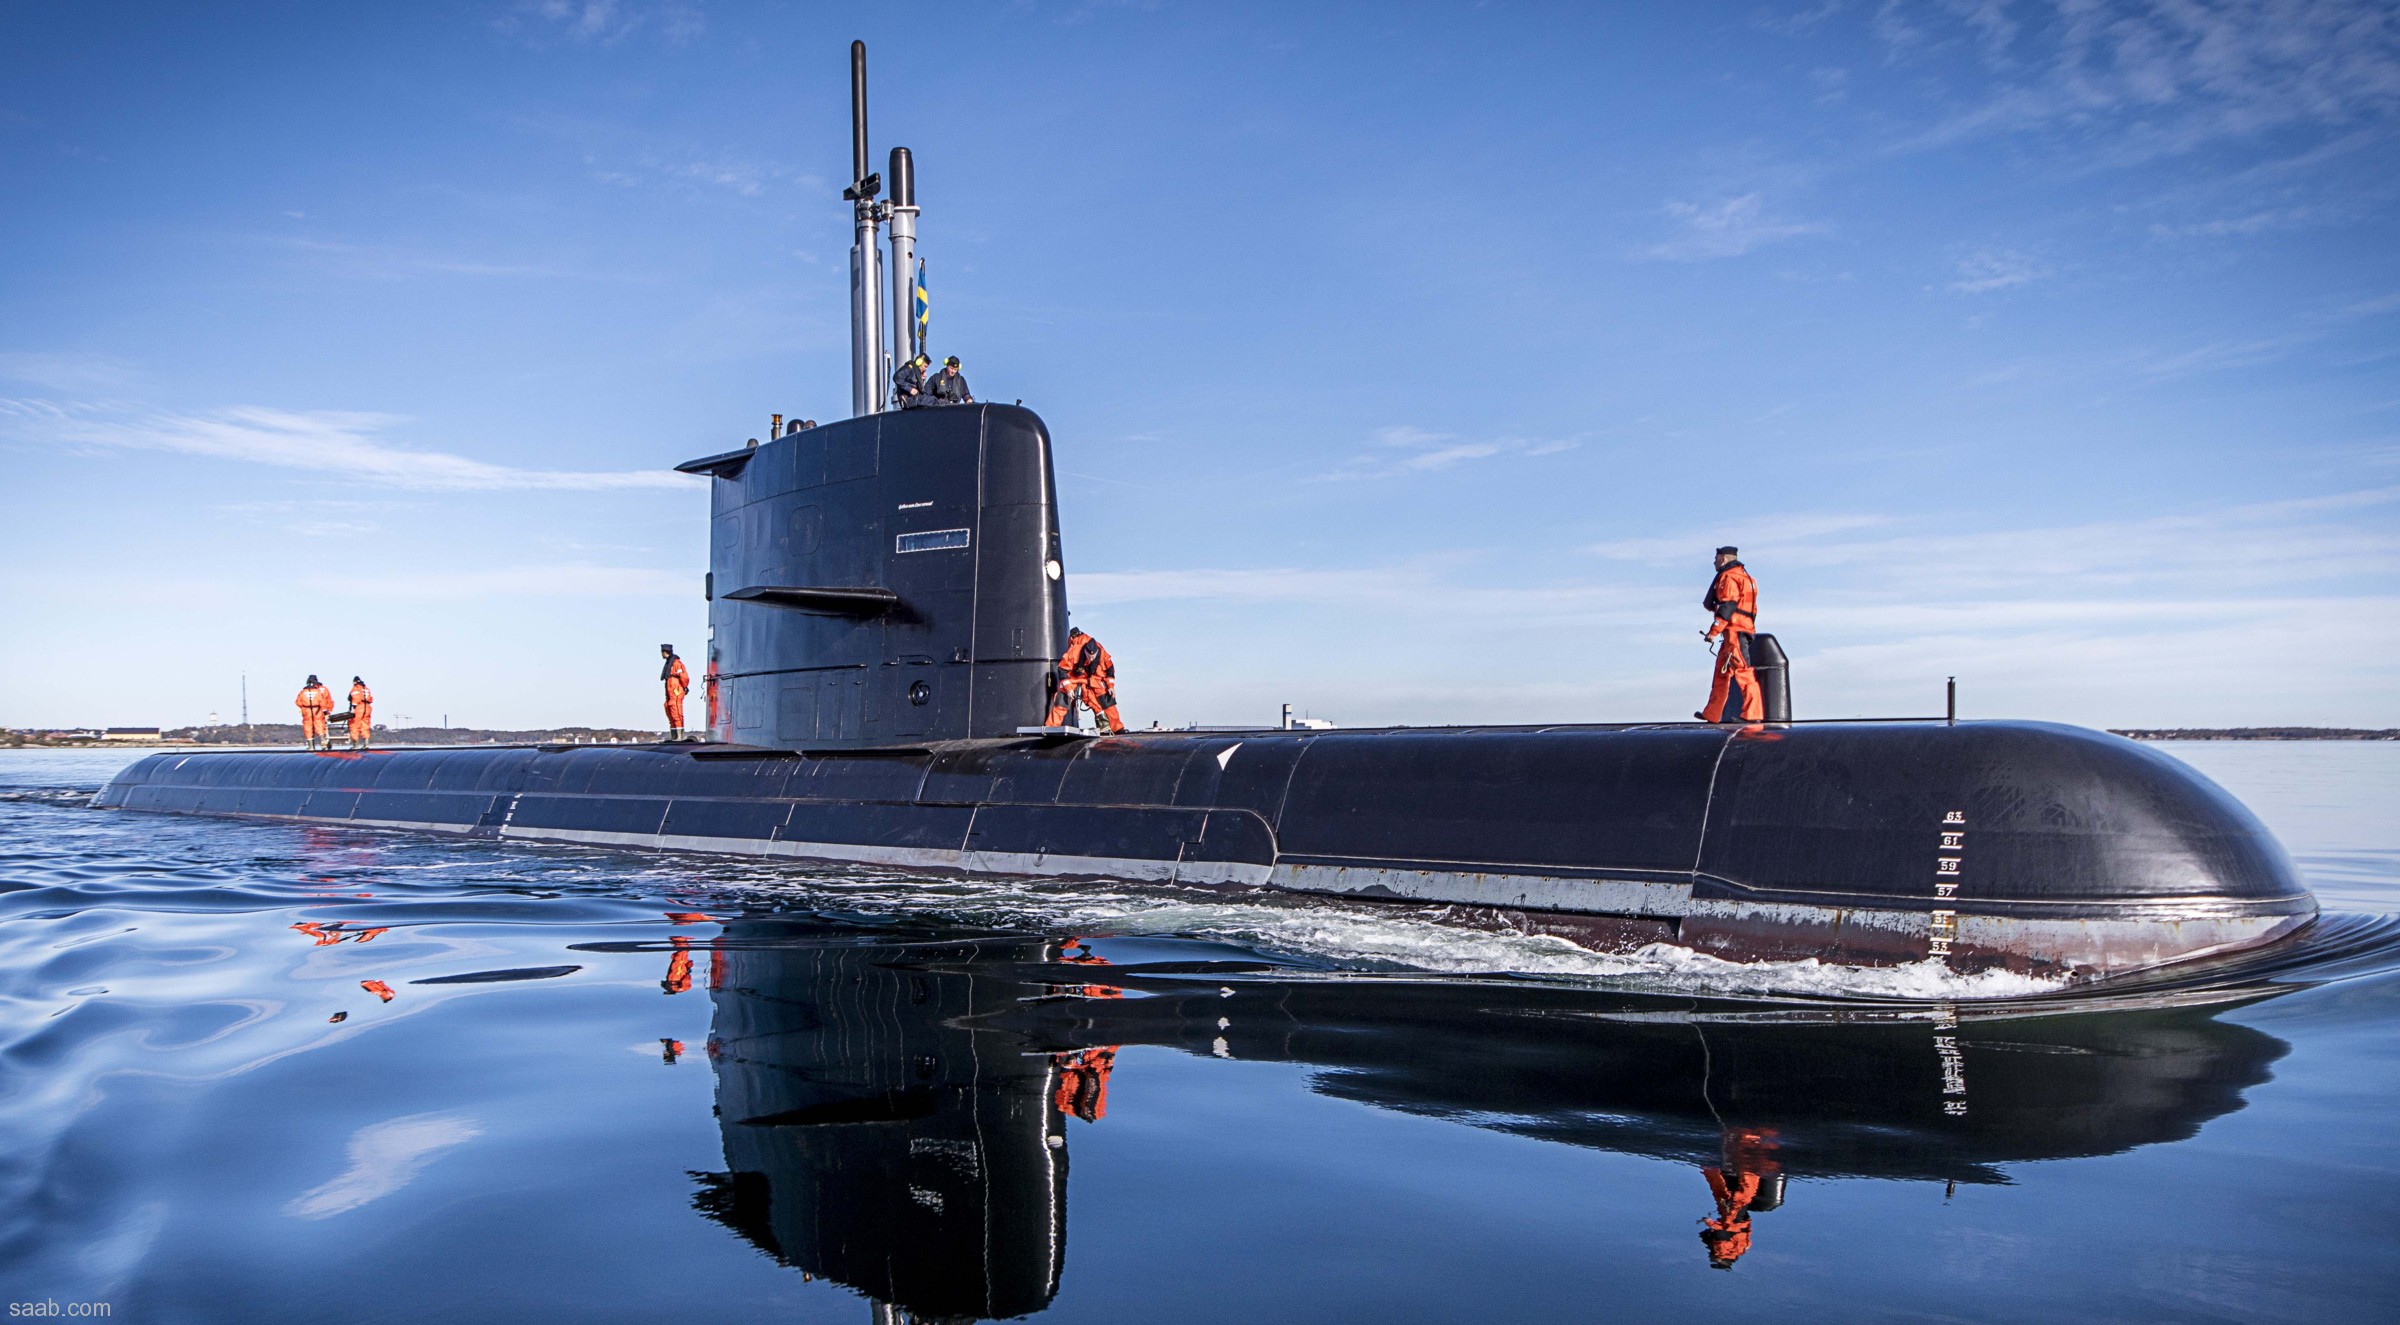 hswms hms gotland gtd class submarine ssk swedish navy svenska marinen försvarsmakten kockums 17